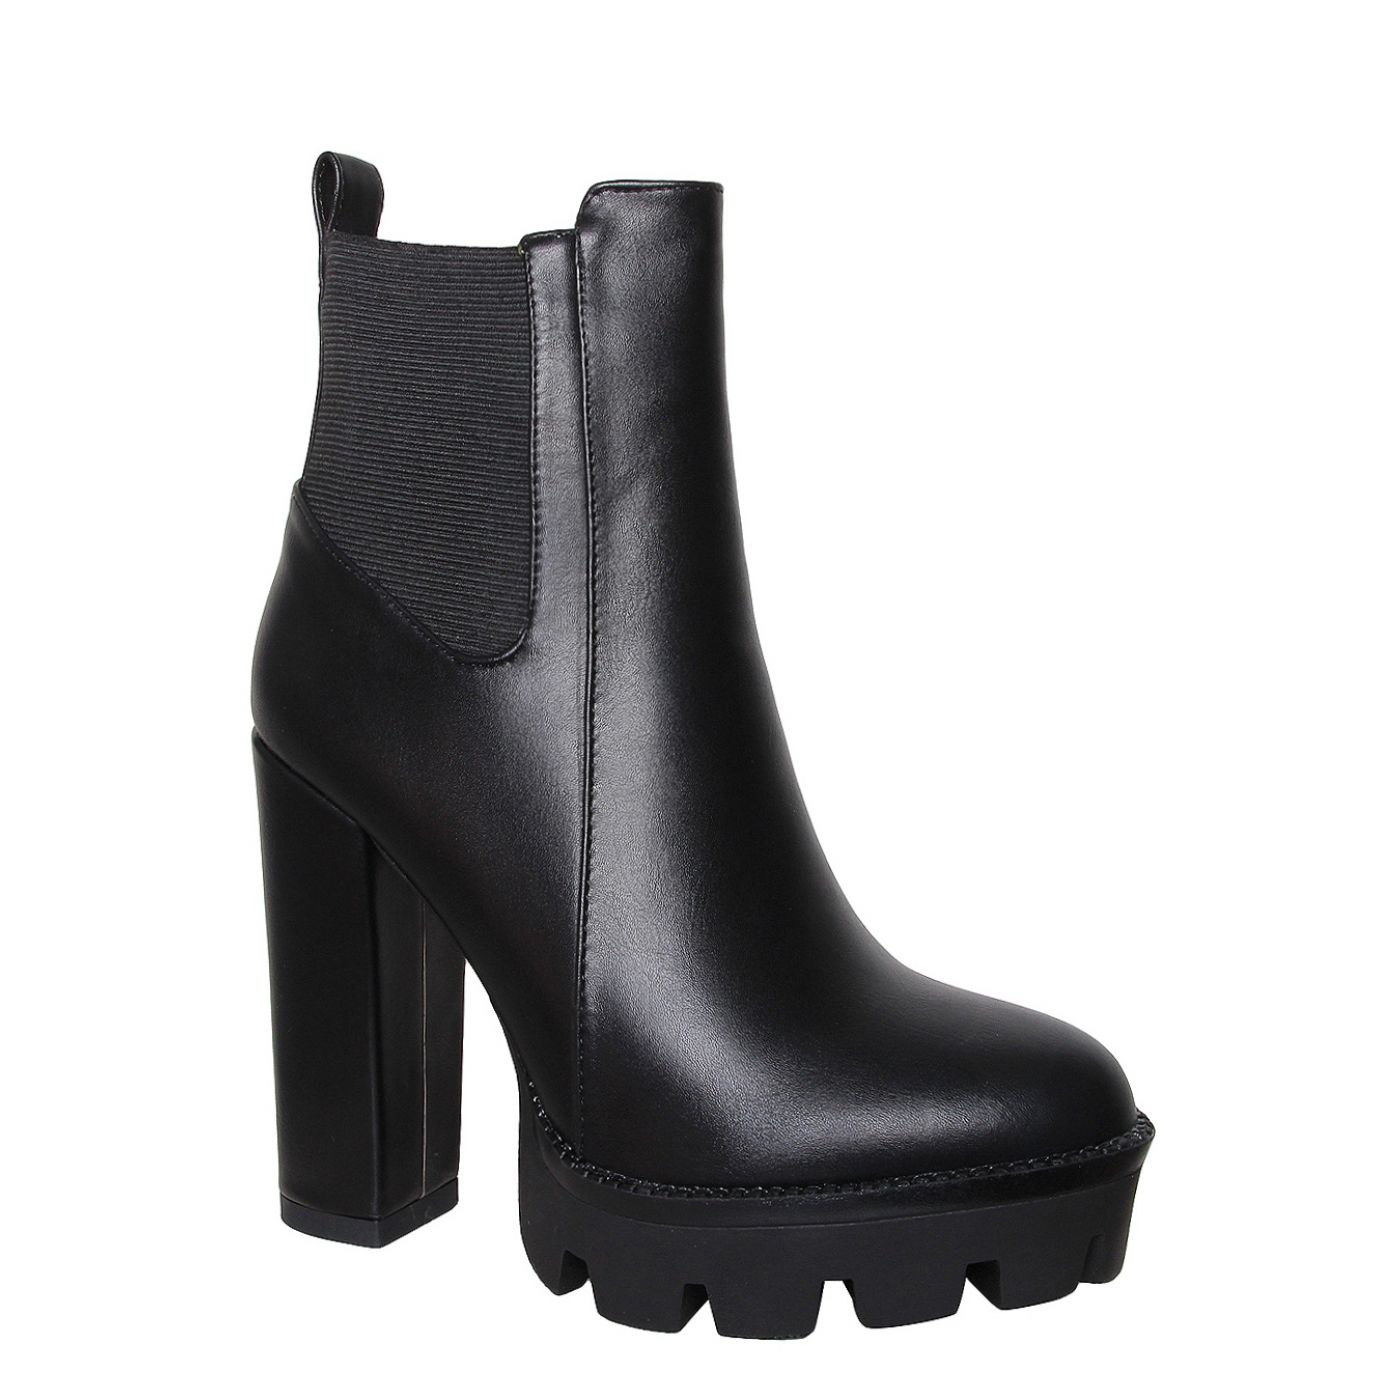 Jemma Black Heel Platform Ankle Boots